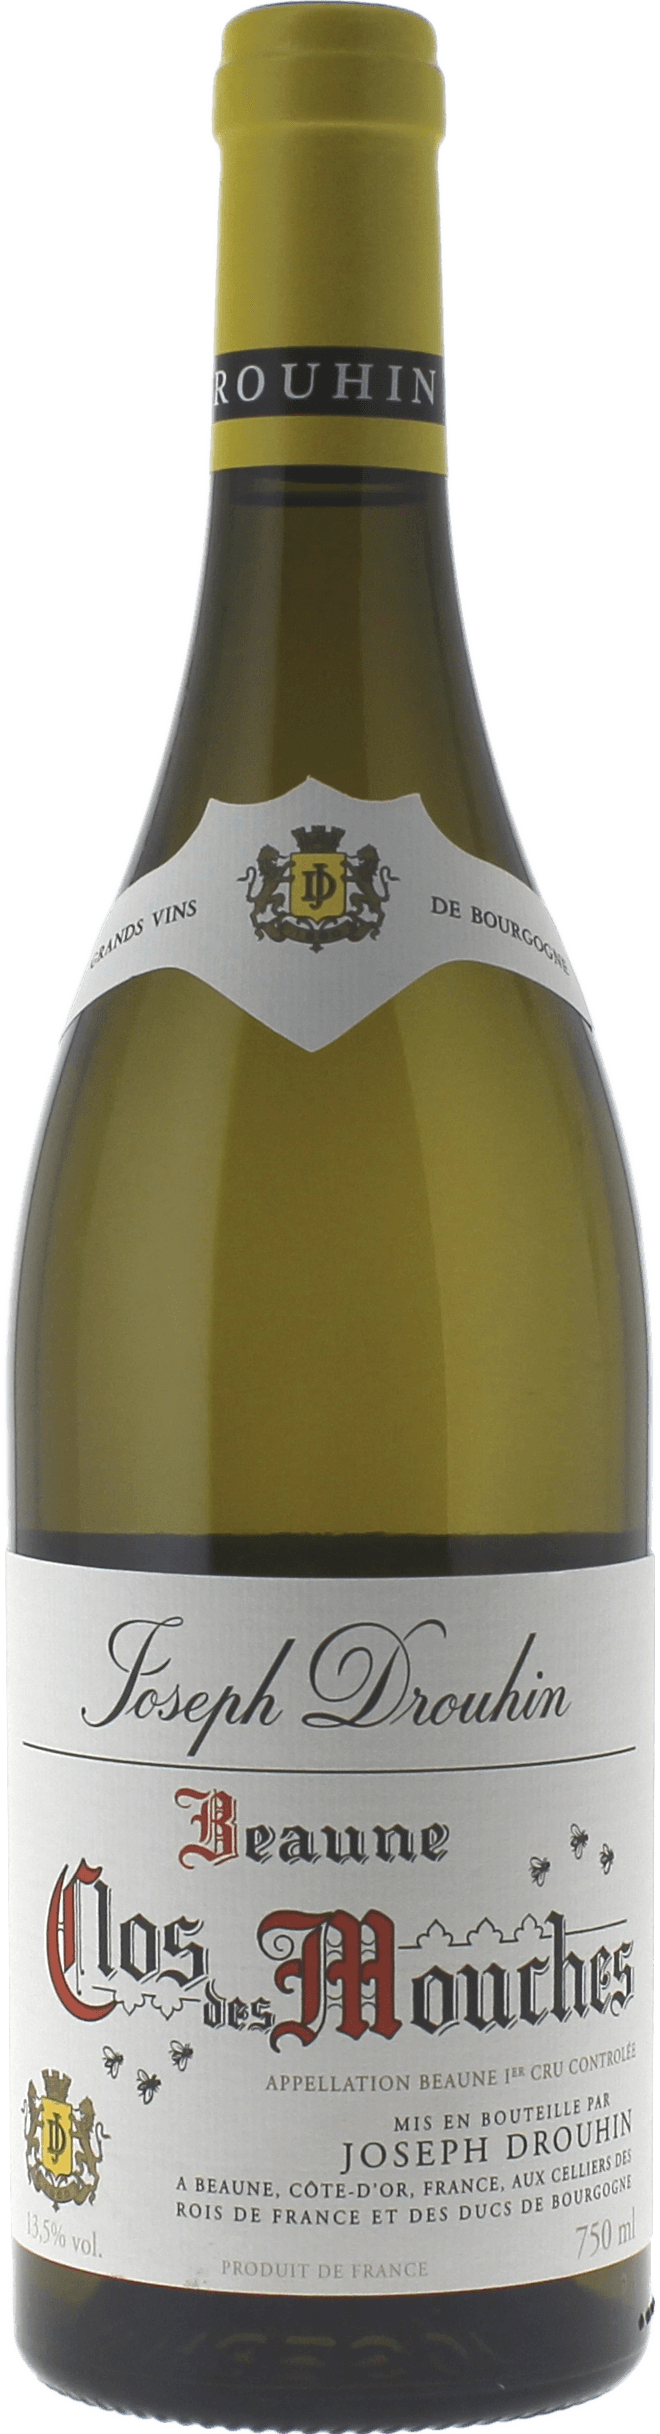 Beaune 1er cru clos des mouches blanc 2017 Domaine Joseph DROUHIN, Bourgogne blanc